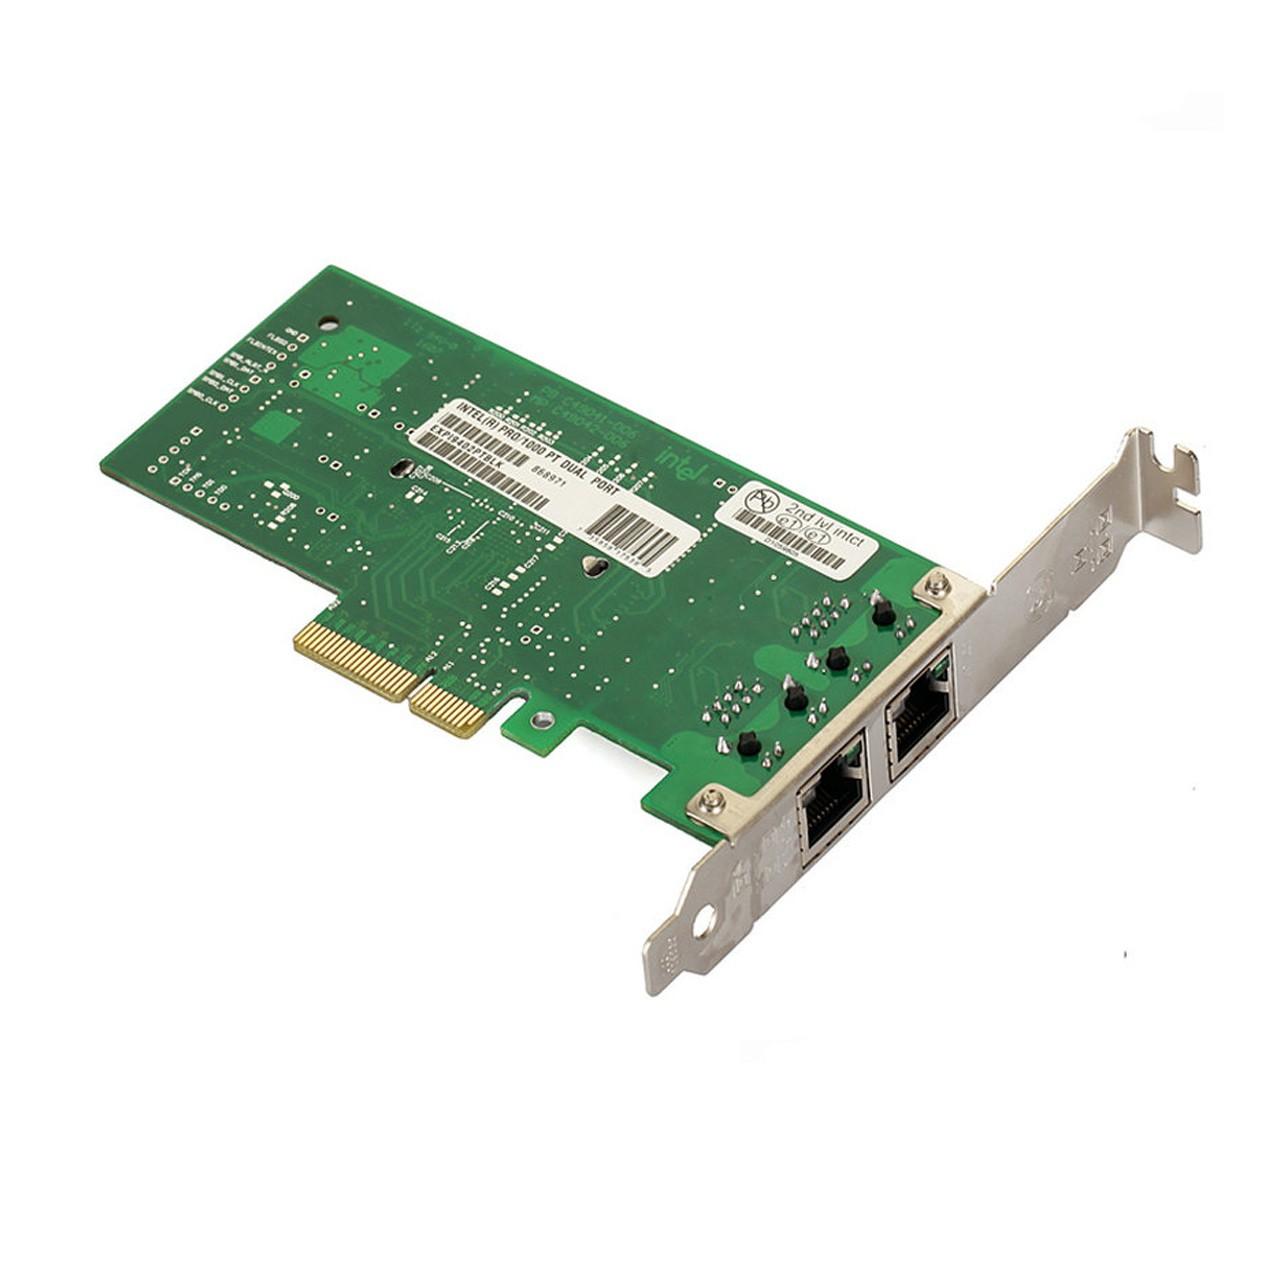 کارت شبکه حرفه ای Intel دو پورت PCIe گیگابیت مدل EXPI9402PTBL با چیپ INTEL 82571EB